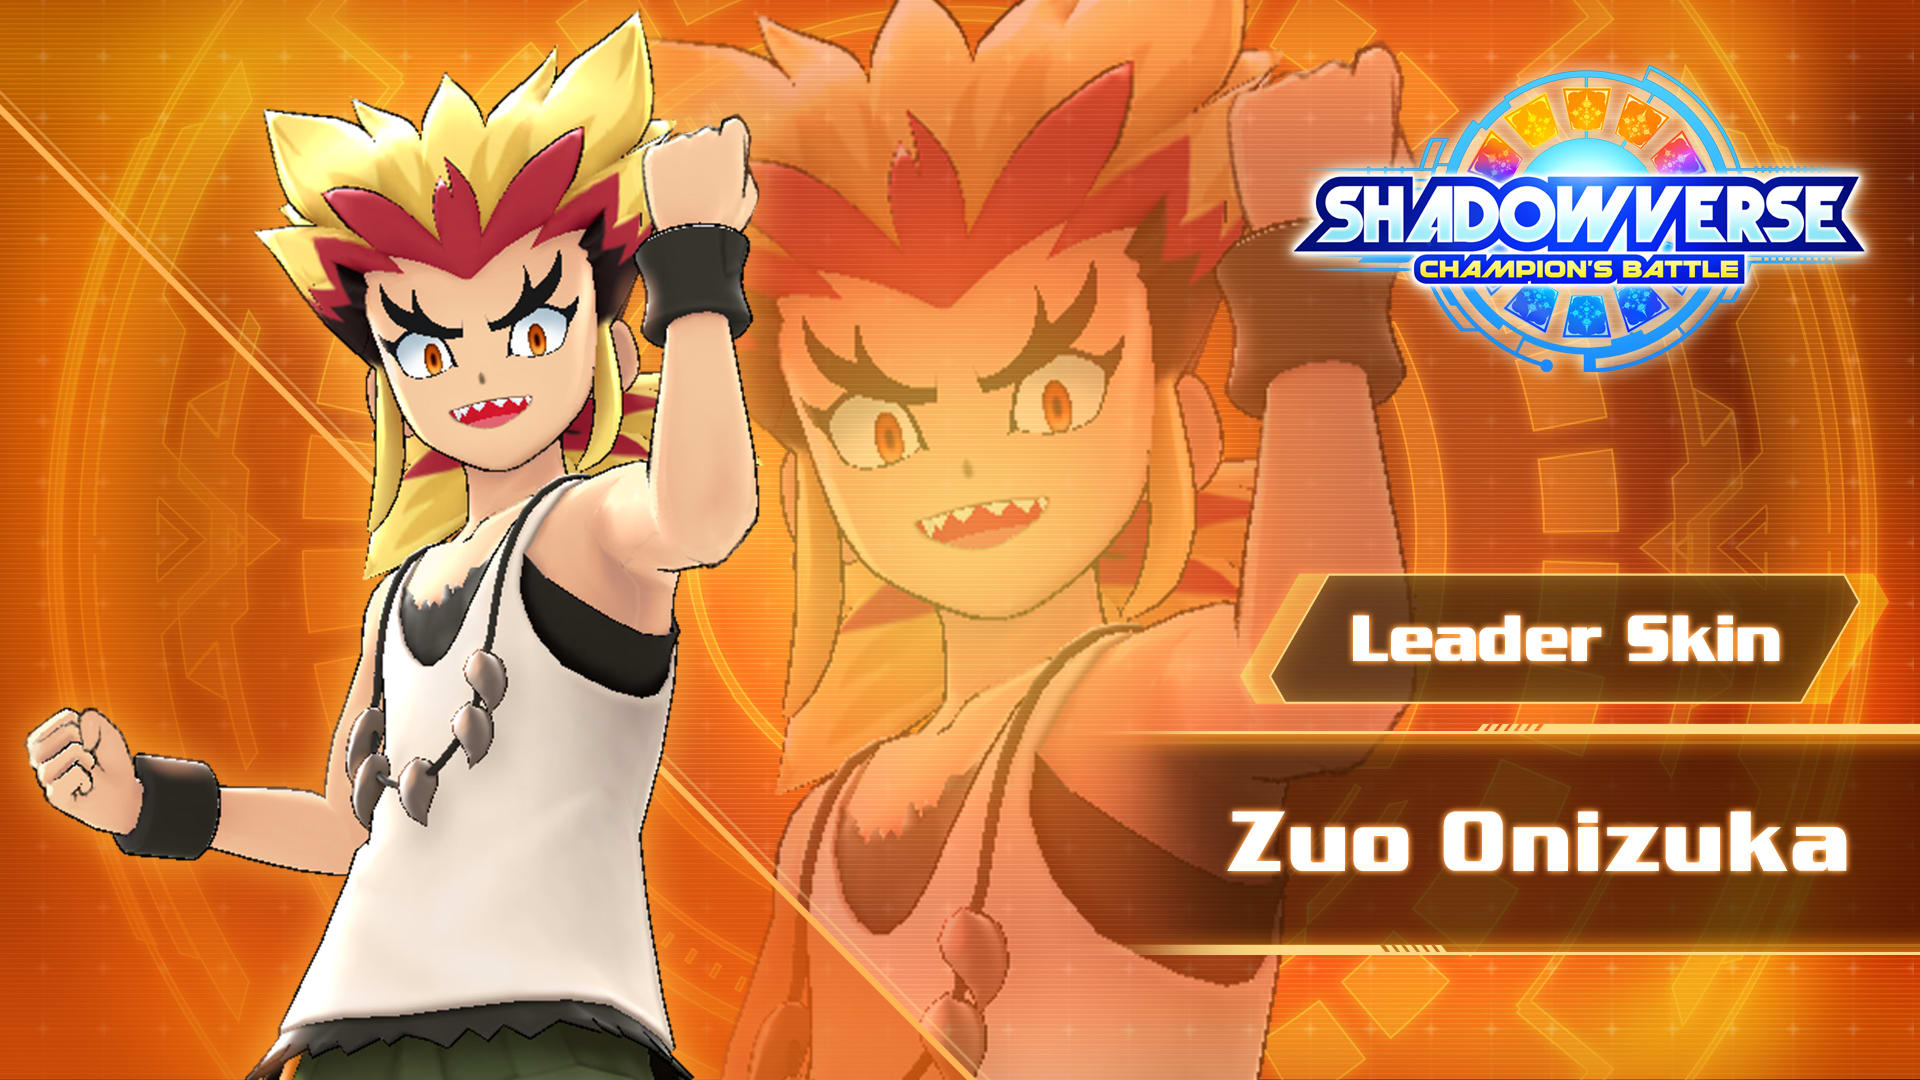 Leader Skin: "Zuo Onizuka"